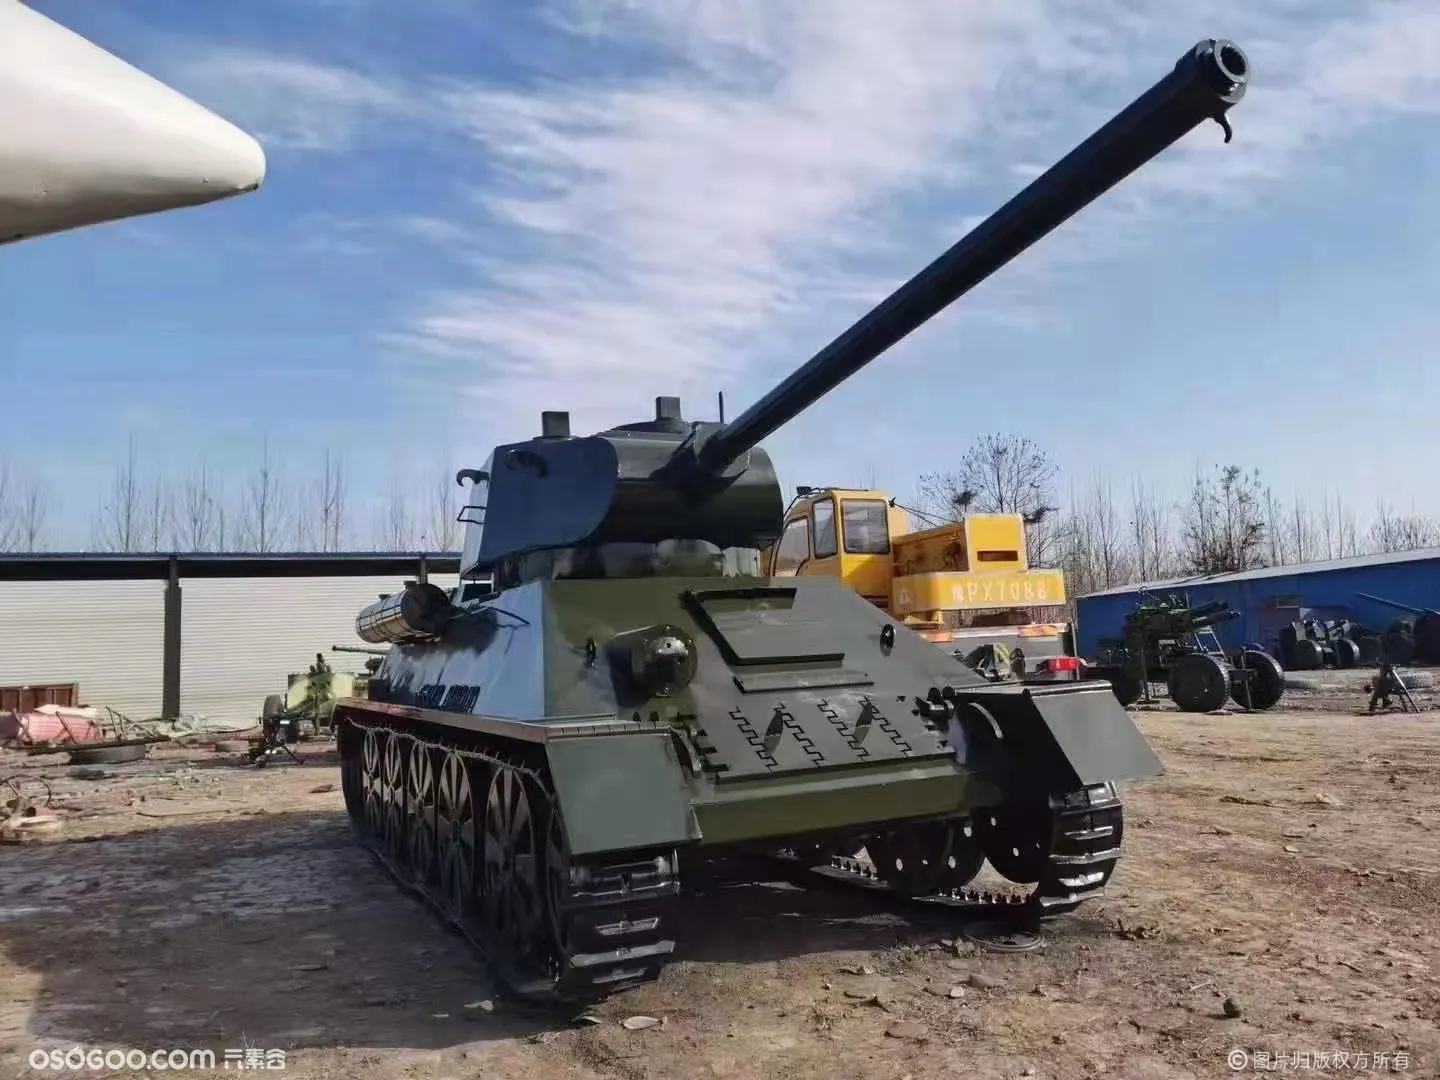 军事夏令营军事模型展览 航空展 升空火箭 开动坦克装甲车